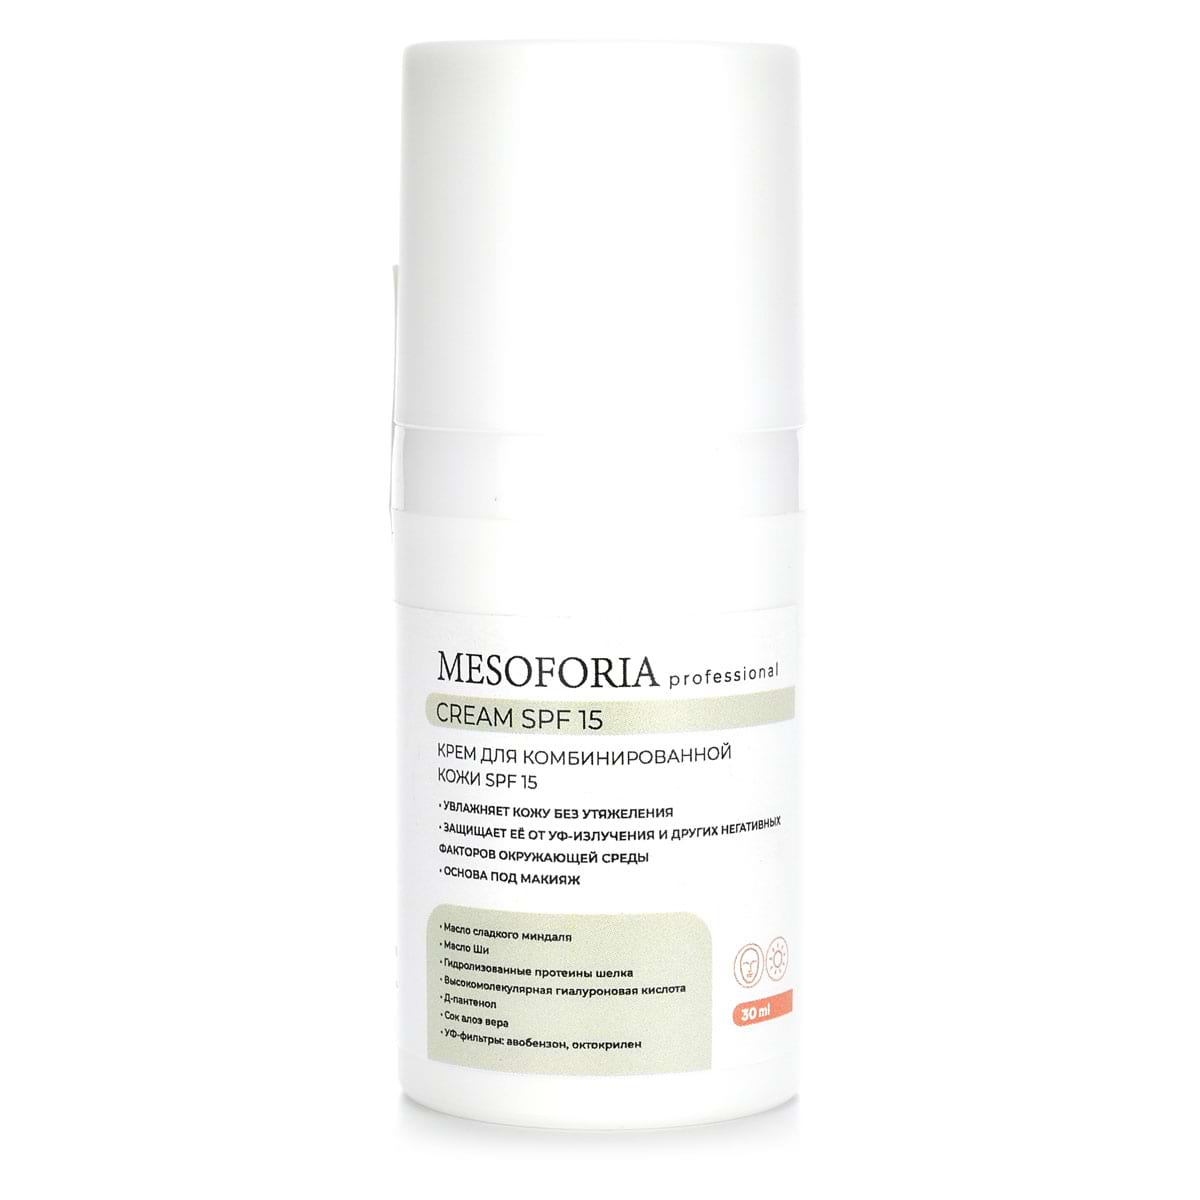 Cream SPF 15 / Крем для комбинированной кожи СПФ 15, Mesoforia (Мезофория) – 30 мл